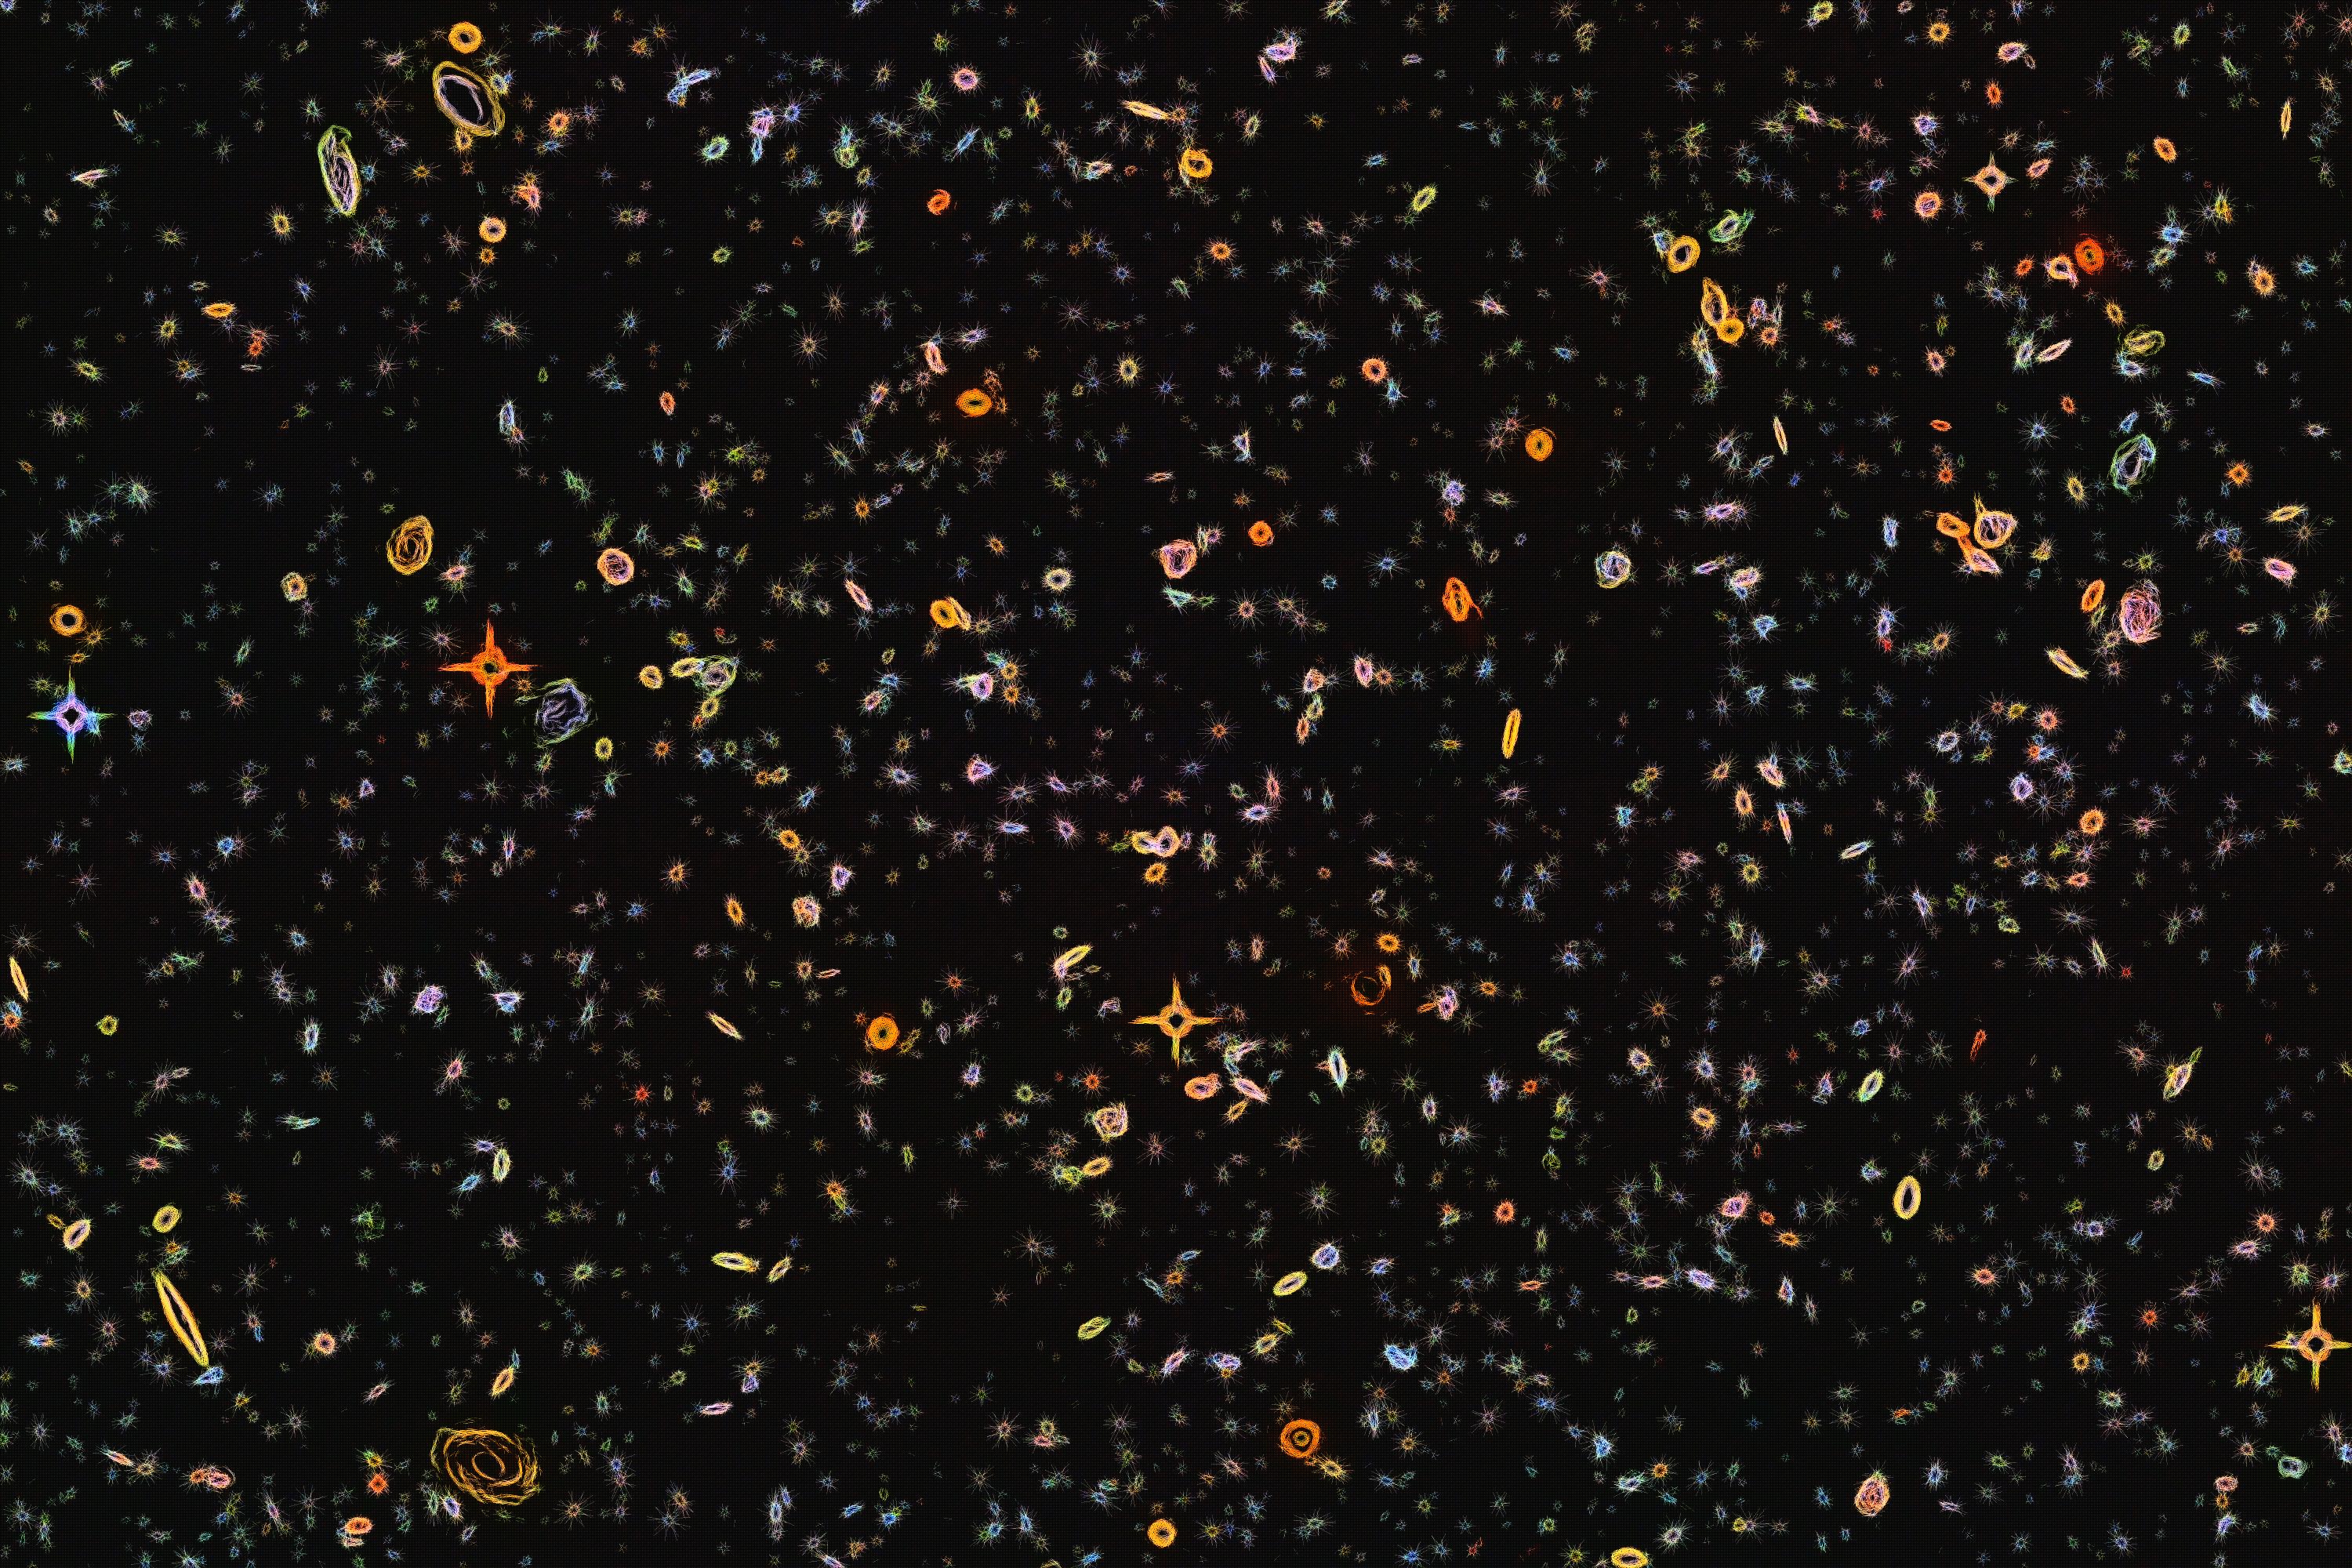 Hubble Deep Field Distortions (3000 x 2000)